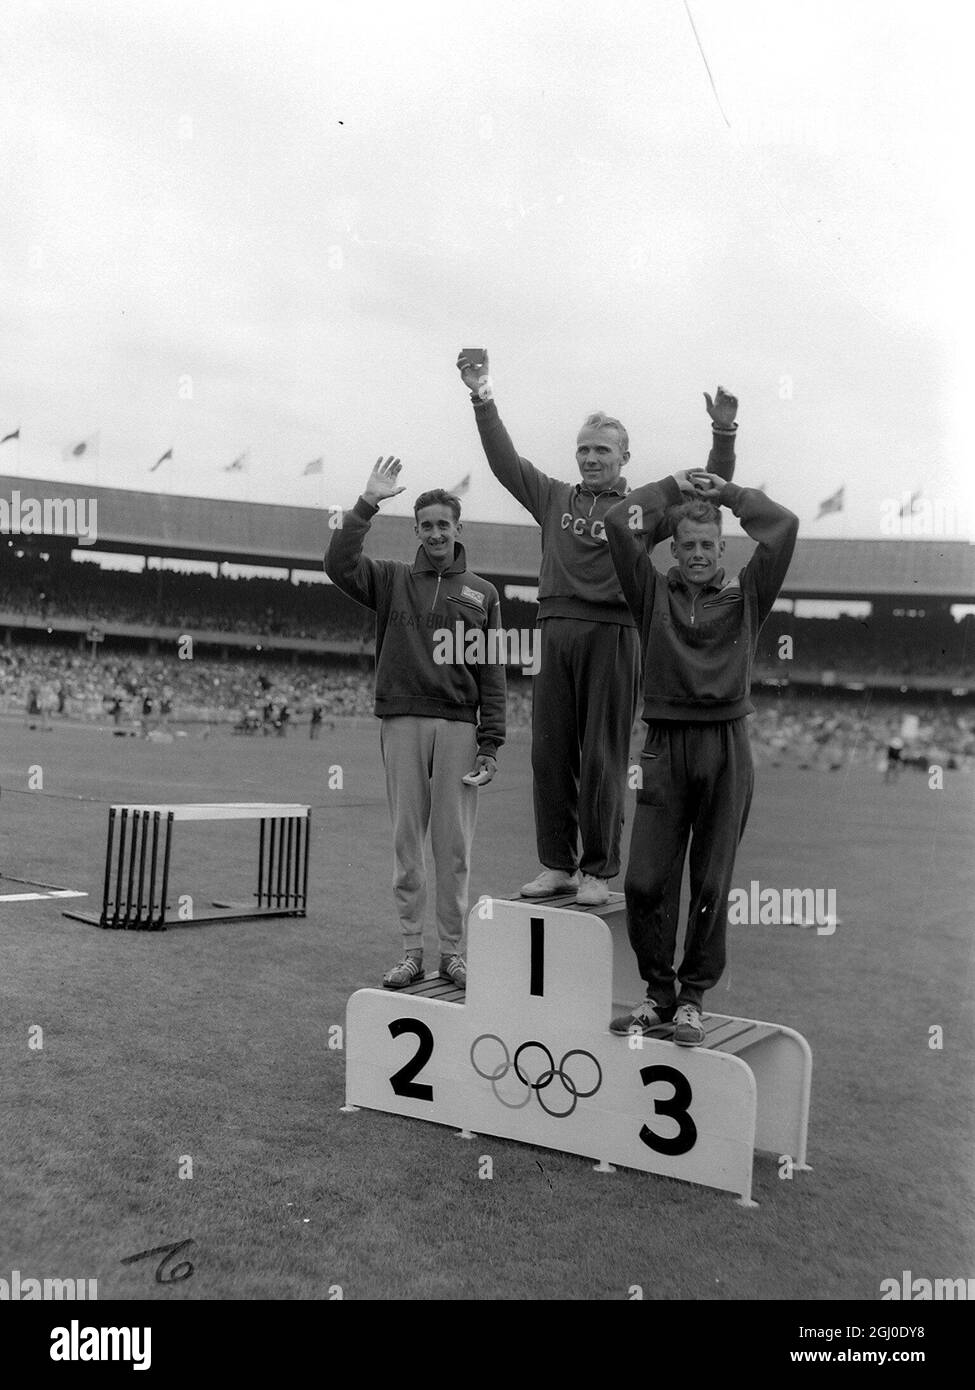 Melbourne Olympic Games 1956 Final para hombres 5000m Vladimir Kuts de Rusia ganó la medalla de oro en un tiempo de 13 minutos y 39,6 segundos con la plata Gordon Pirie de Gran Bretaña y Derek Ibbotson de bronce de Gran Bretaña. 28th de noviembre de 1956 Foto de stock